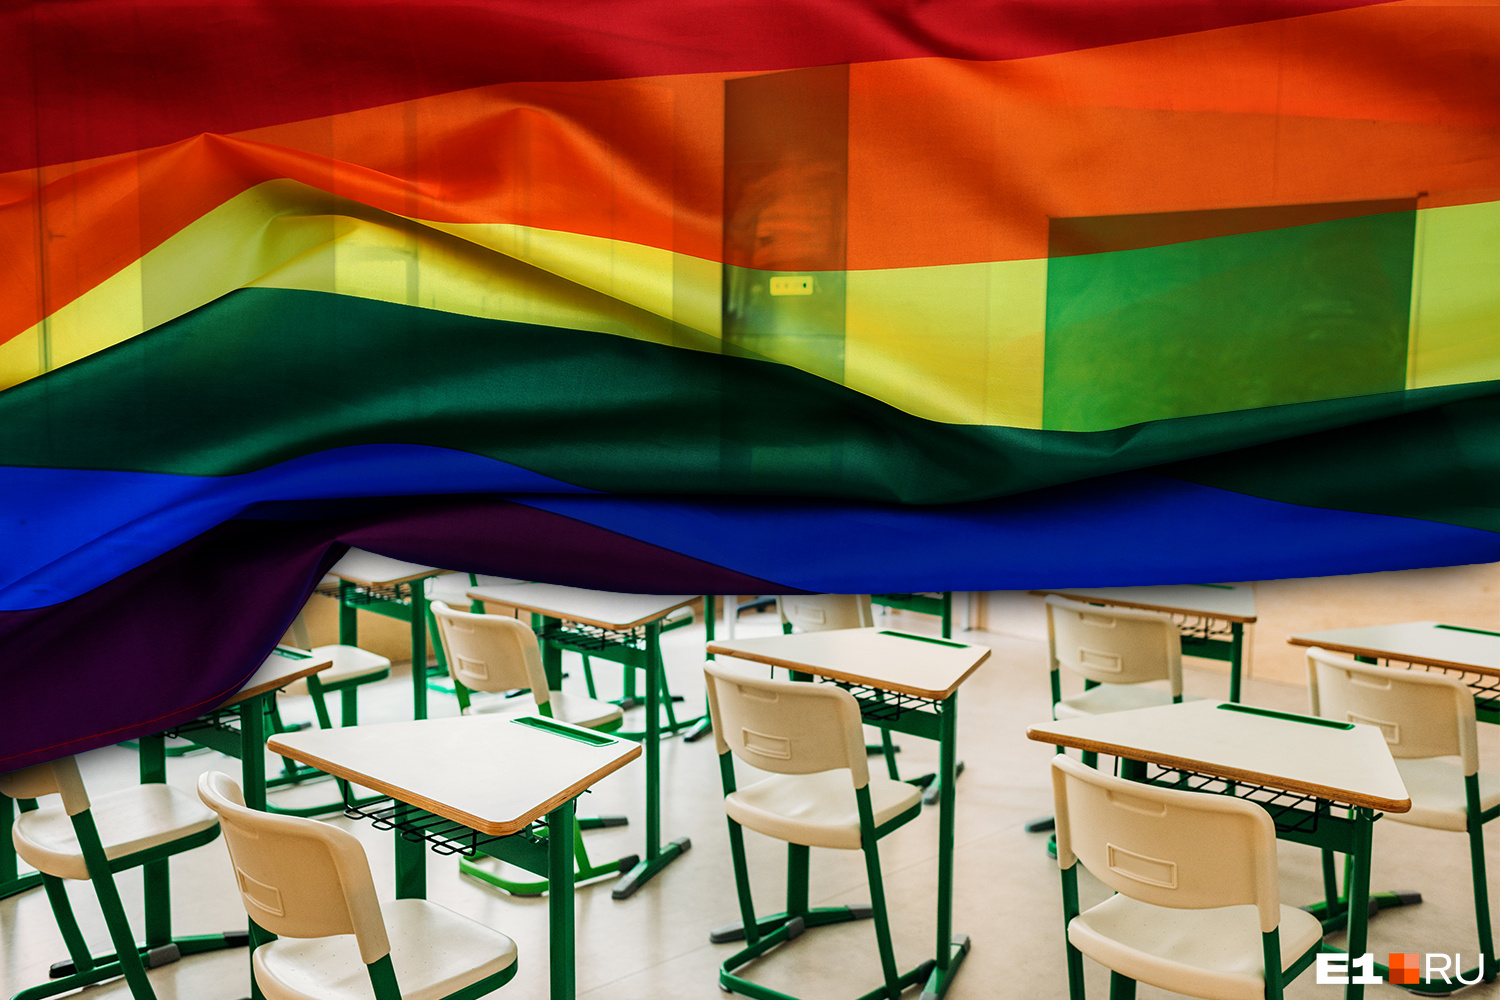 Половина ЛГБТ-школьников в России стали жертвами сексуальных домогательств,  статистика от ресурсного центра - 21 октября 2021 - e1.ru